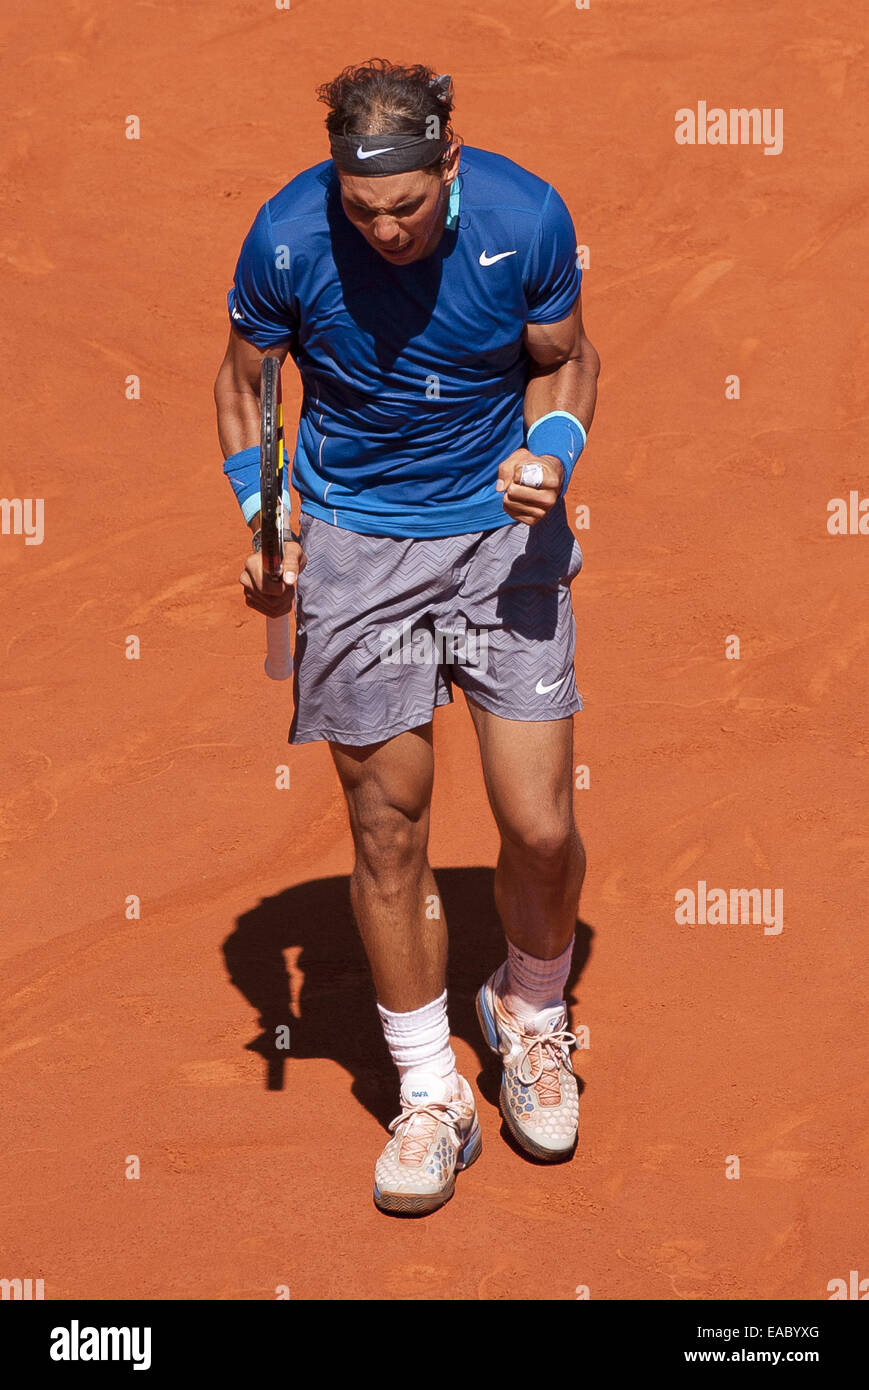 2014 Mutua Madrid Open Uomini Singoli - Rafael Nadal v Tomas BERDYCH - Quarti di finale. Rafael Nadal ha sconfitto Tomas BERDYCH oltre 2 set (6-4, 6-2) con: Rafael Nadal dove: Madrid, Spagna Quando: 09 Maggio 2014 Foto Stock